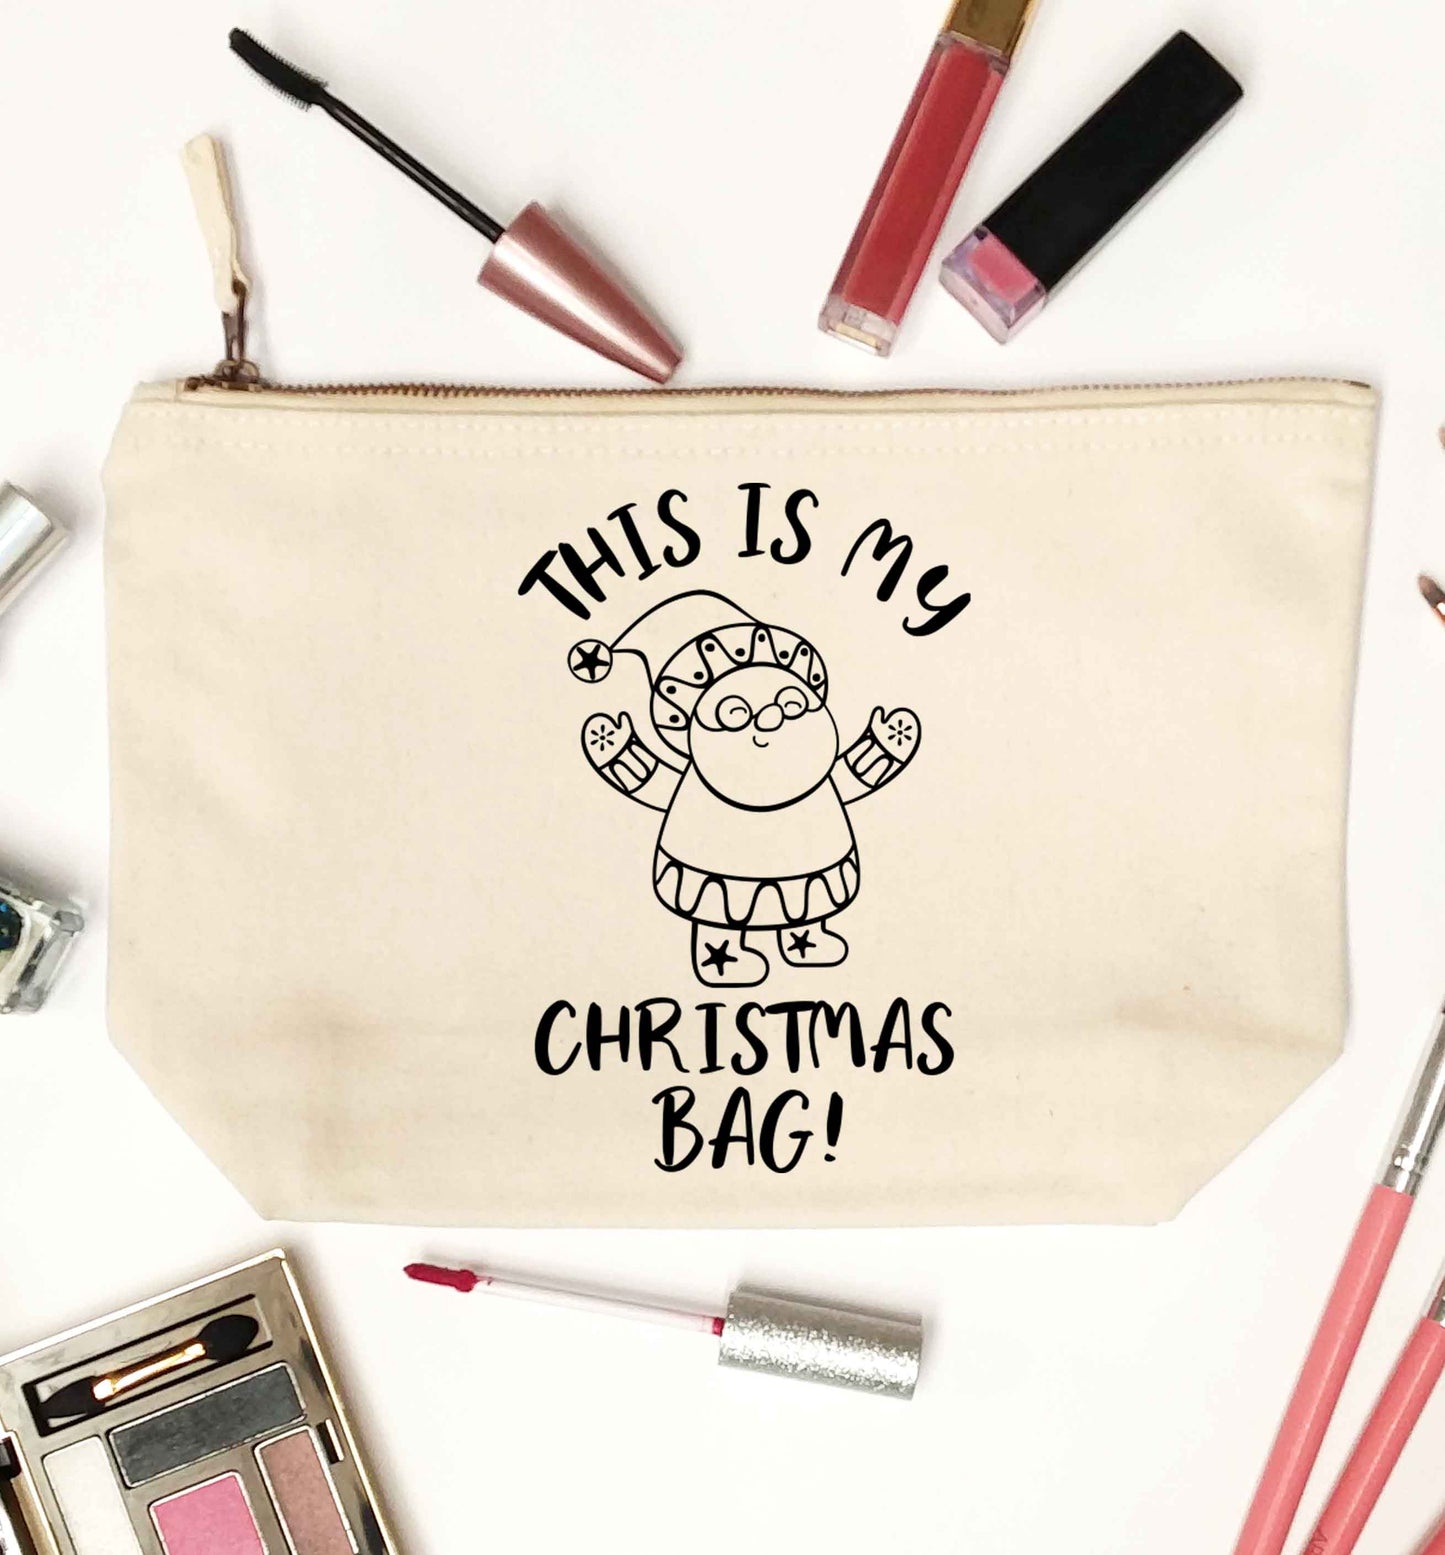 This is my Christmas bag natural makeup bag